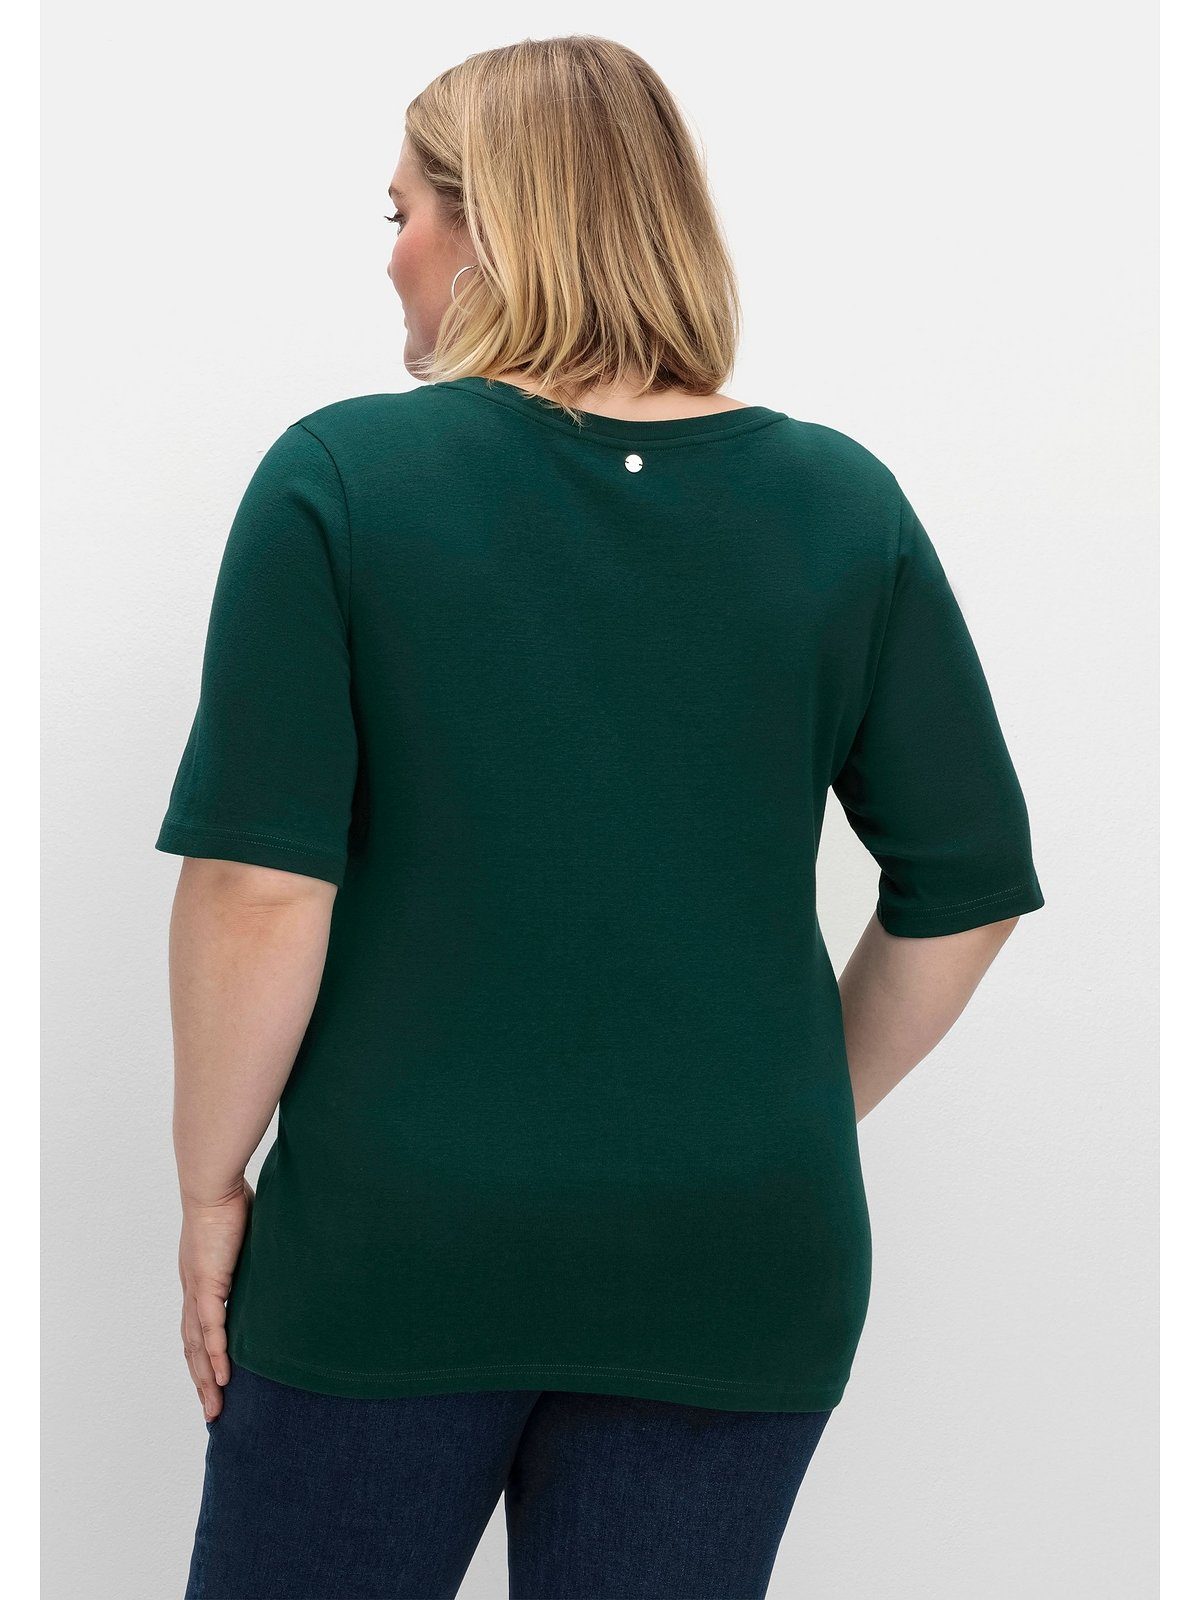 Sheego T-Shirt Große Größen tiefgrün Rippqualität in feiner, dehnbarer